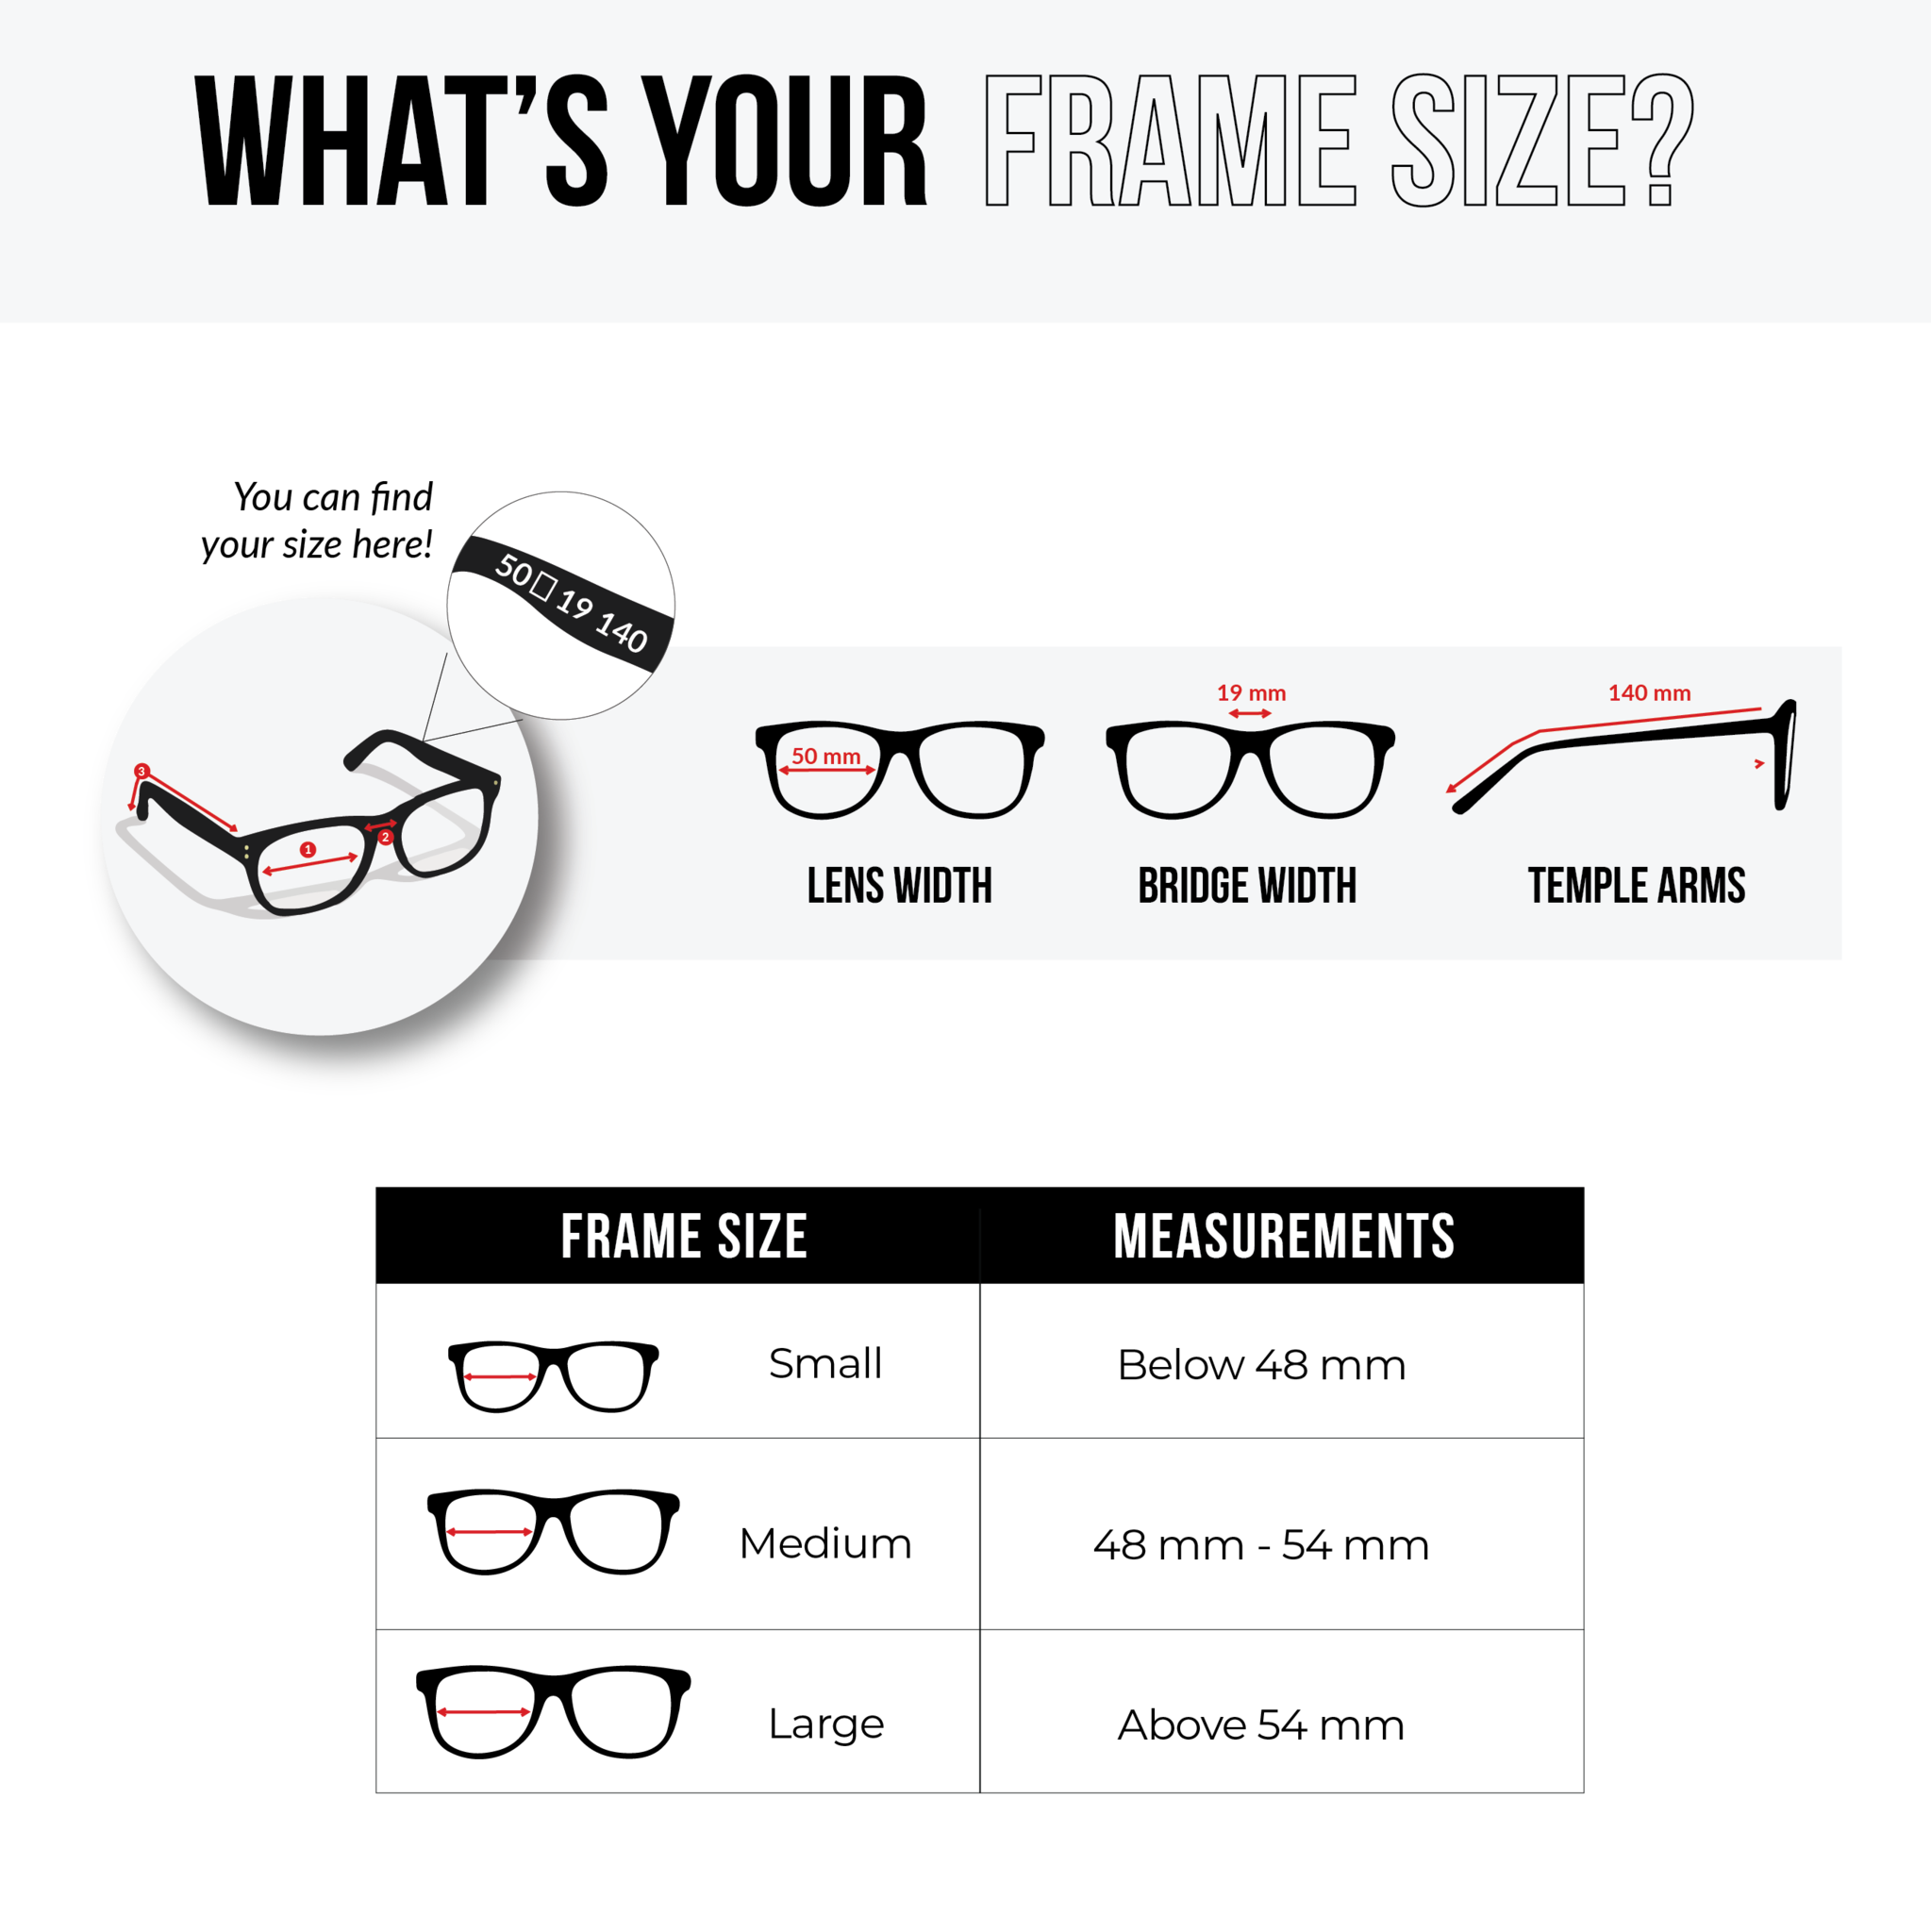 NS Luxury - 10ZV - Tortoise - Eyeglasses